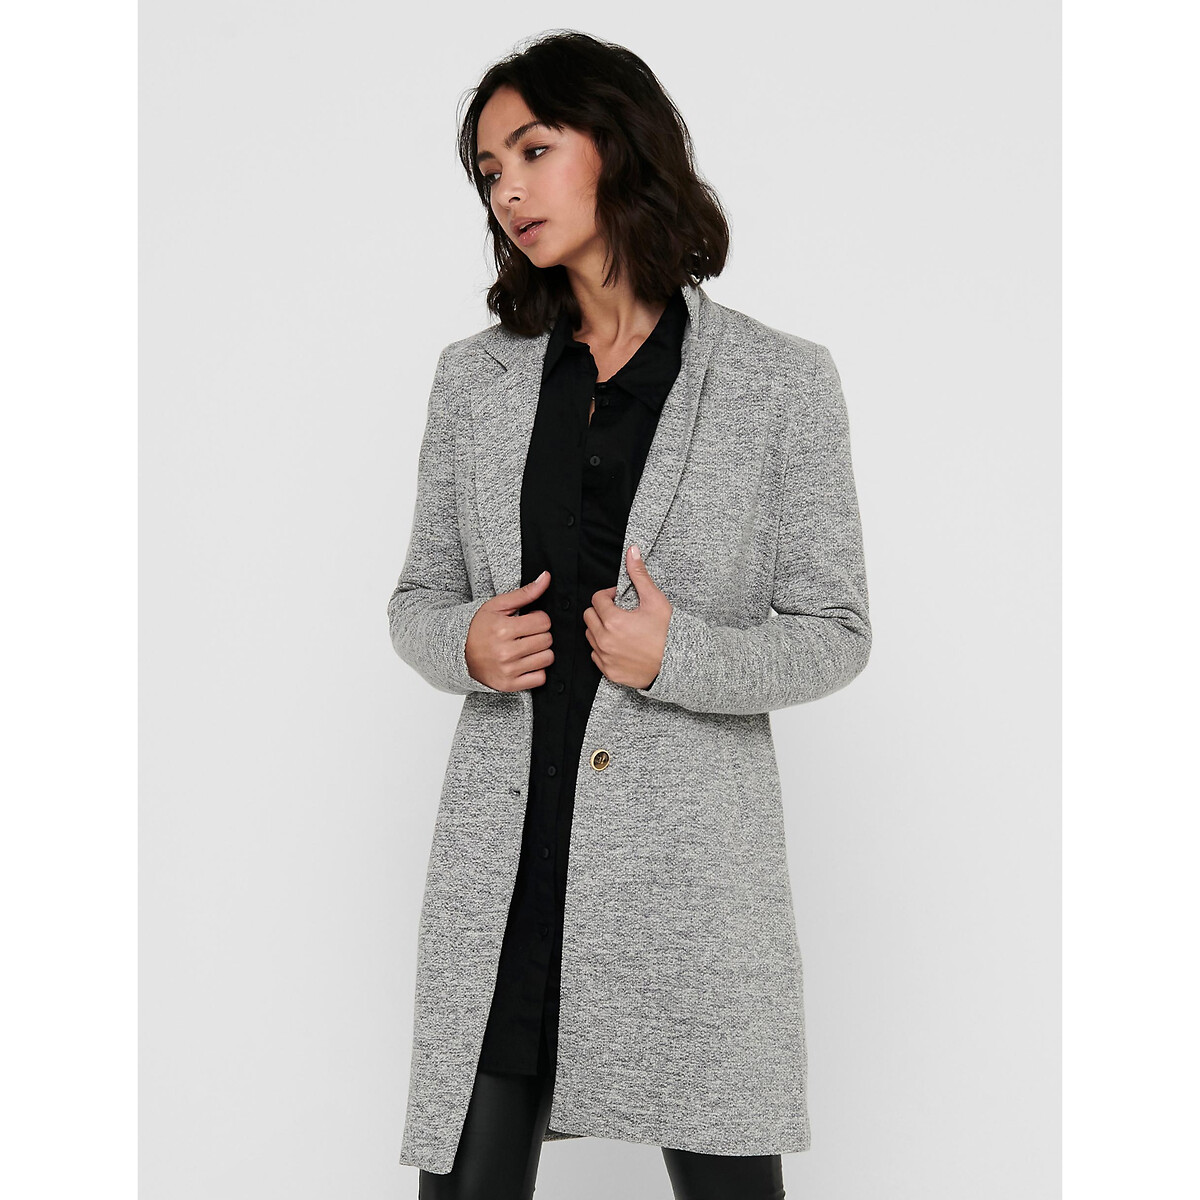 Пальто прямое средней длины воротник-стойка 38 (FR) - 44 (RUS) серый inspire пальто прямое в клетку средней длины серо бежевый